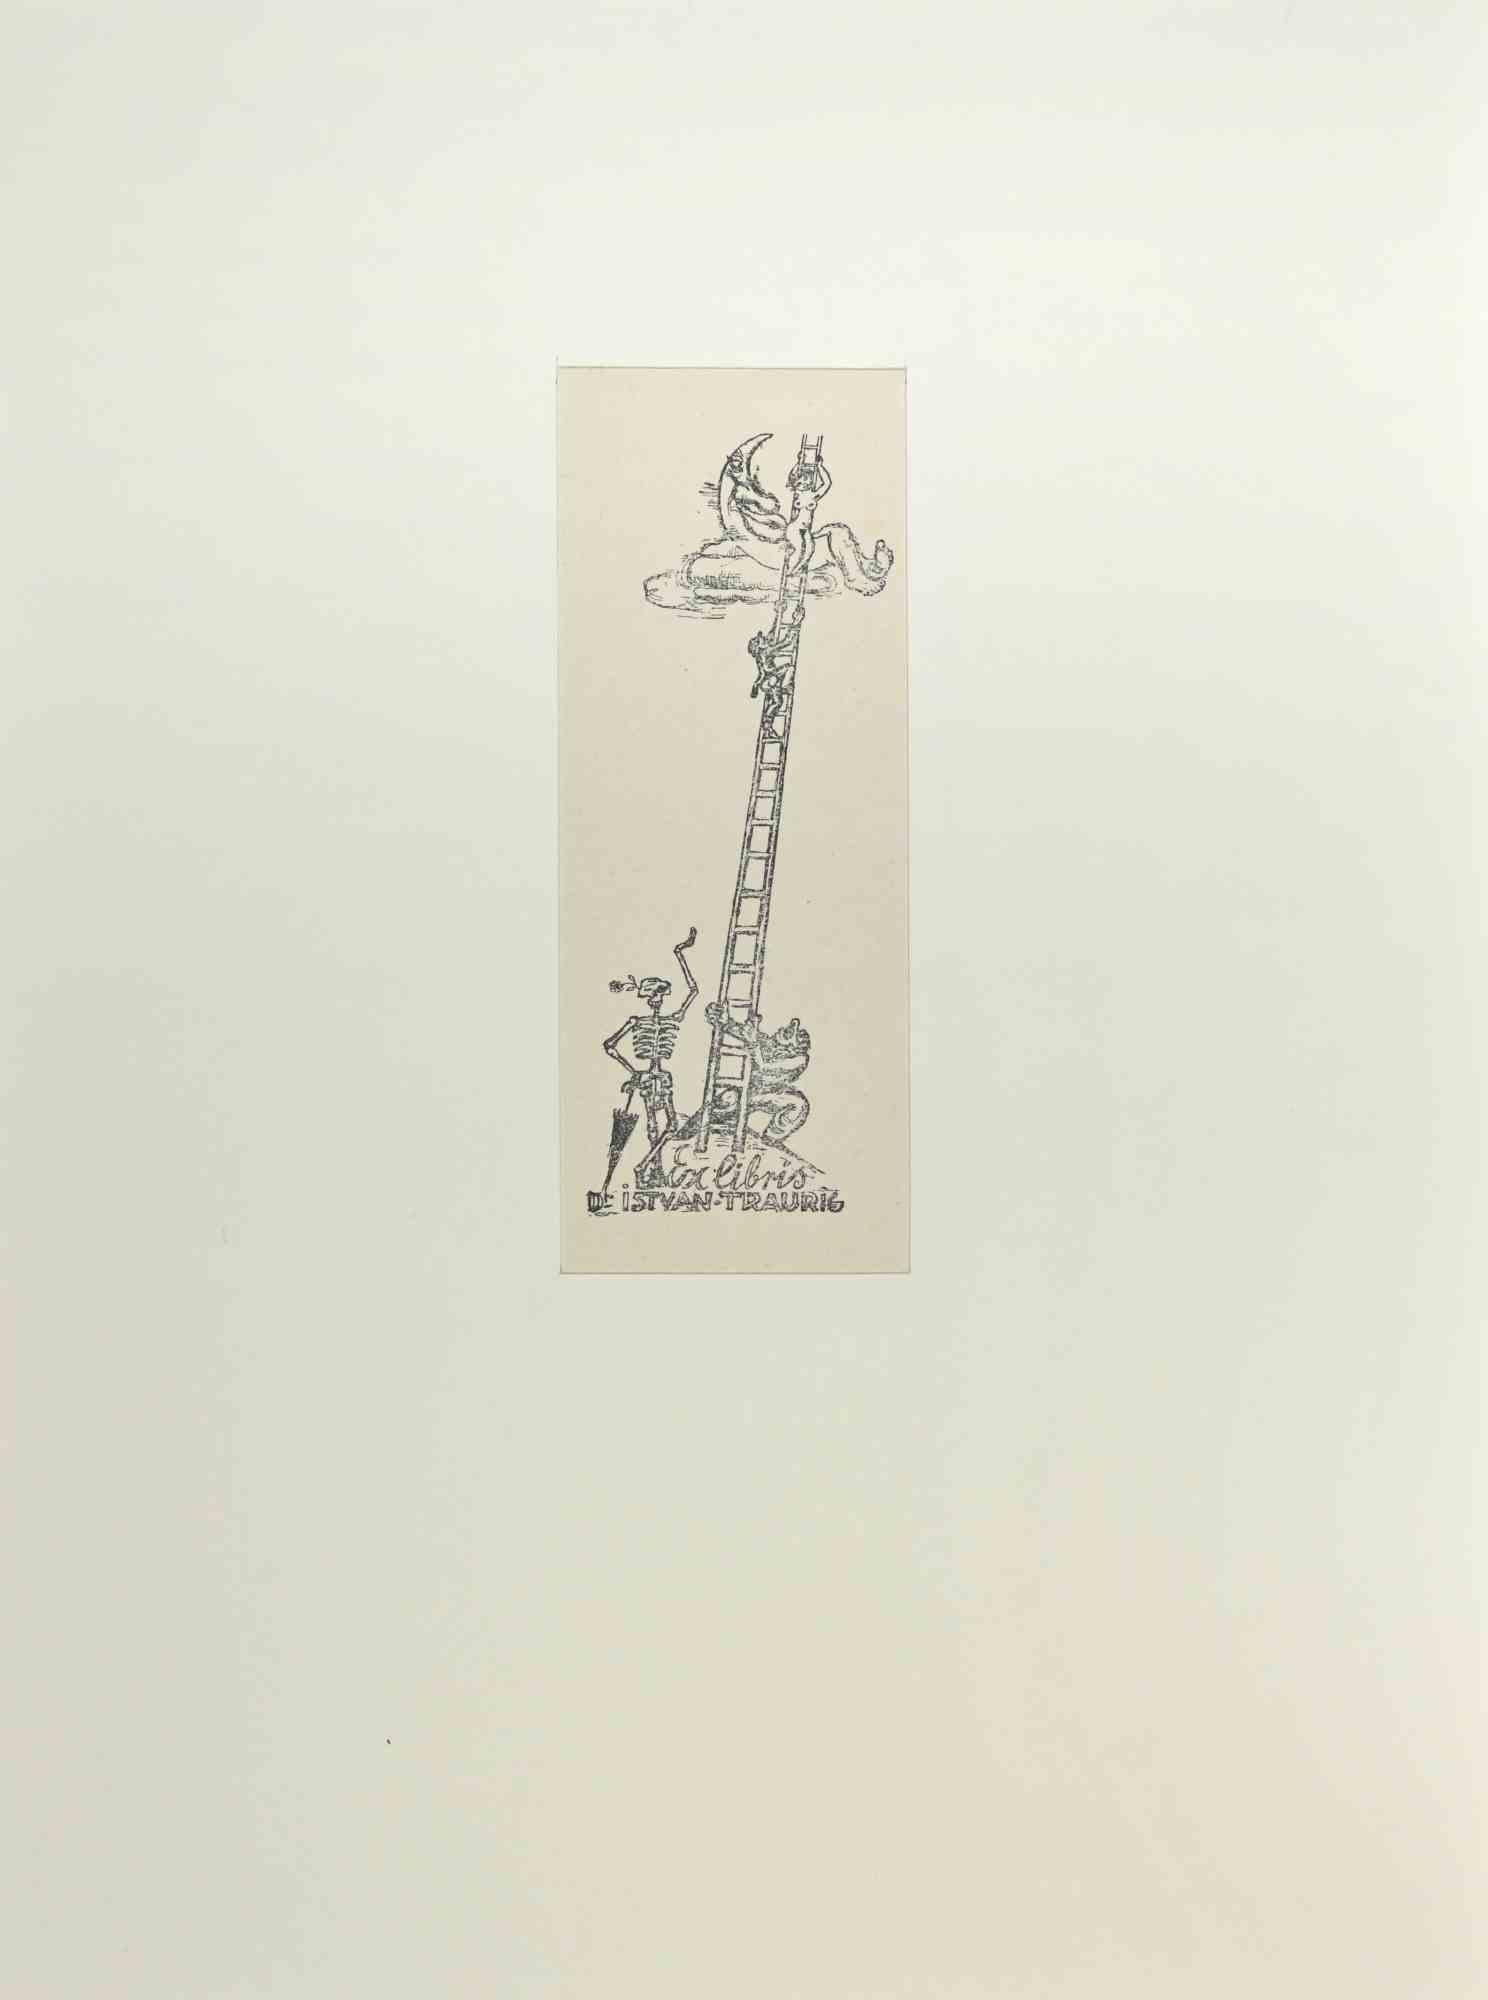 Ex Libris - Istvan Traurig - Etching by Michel Fingesten - 1930s